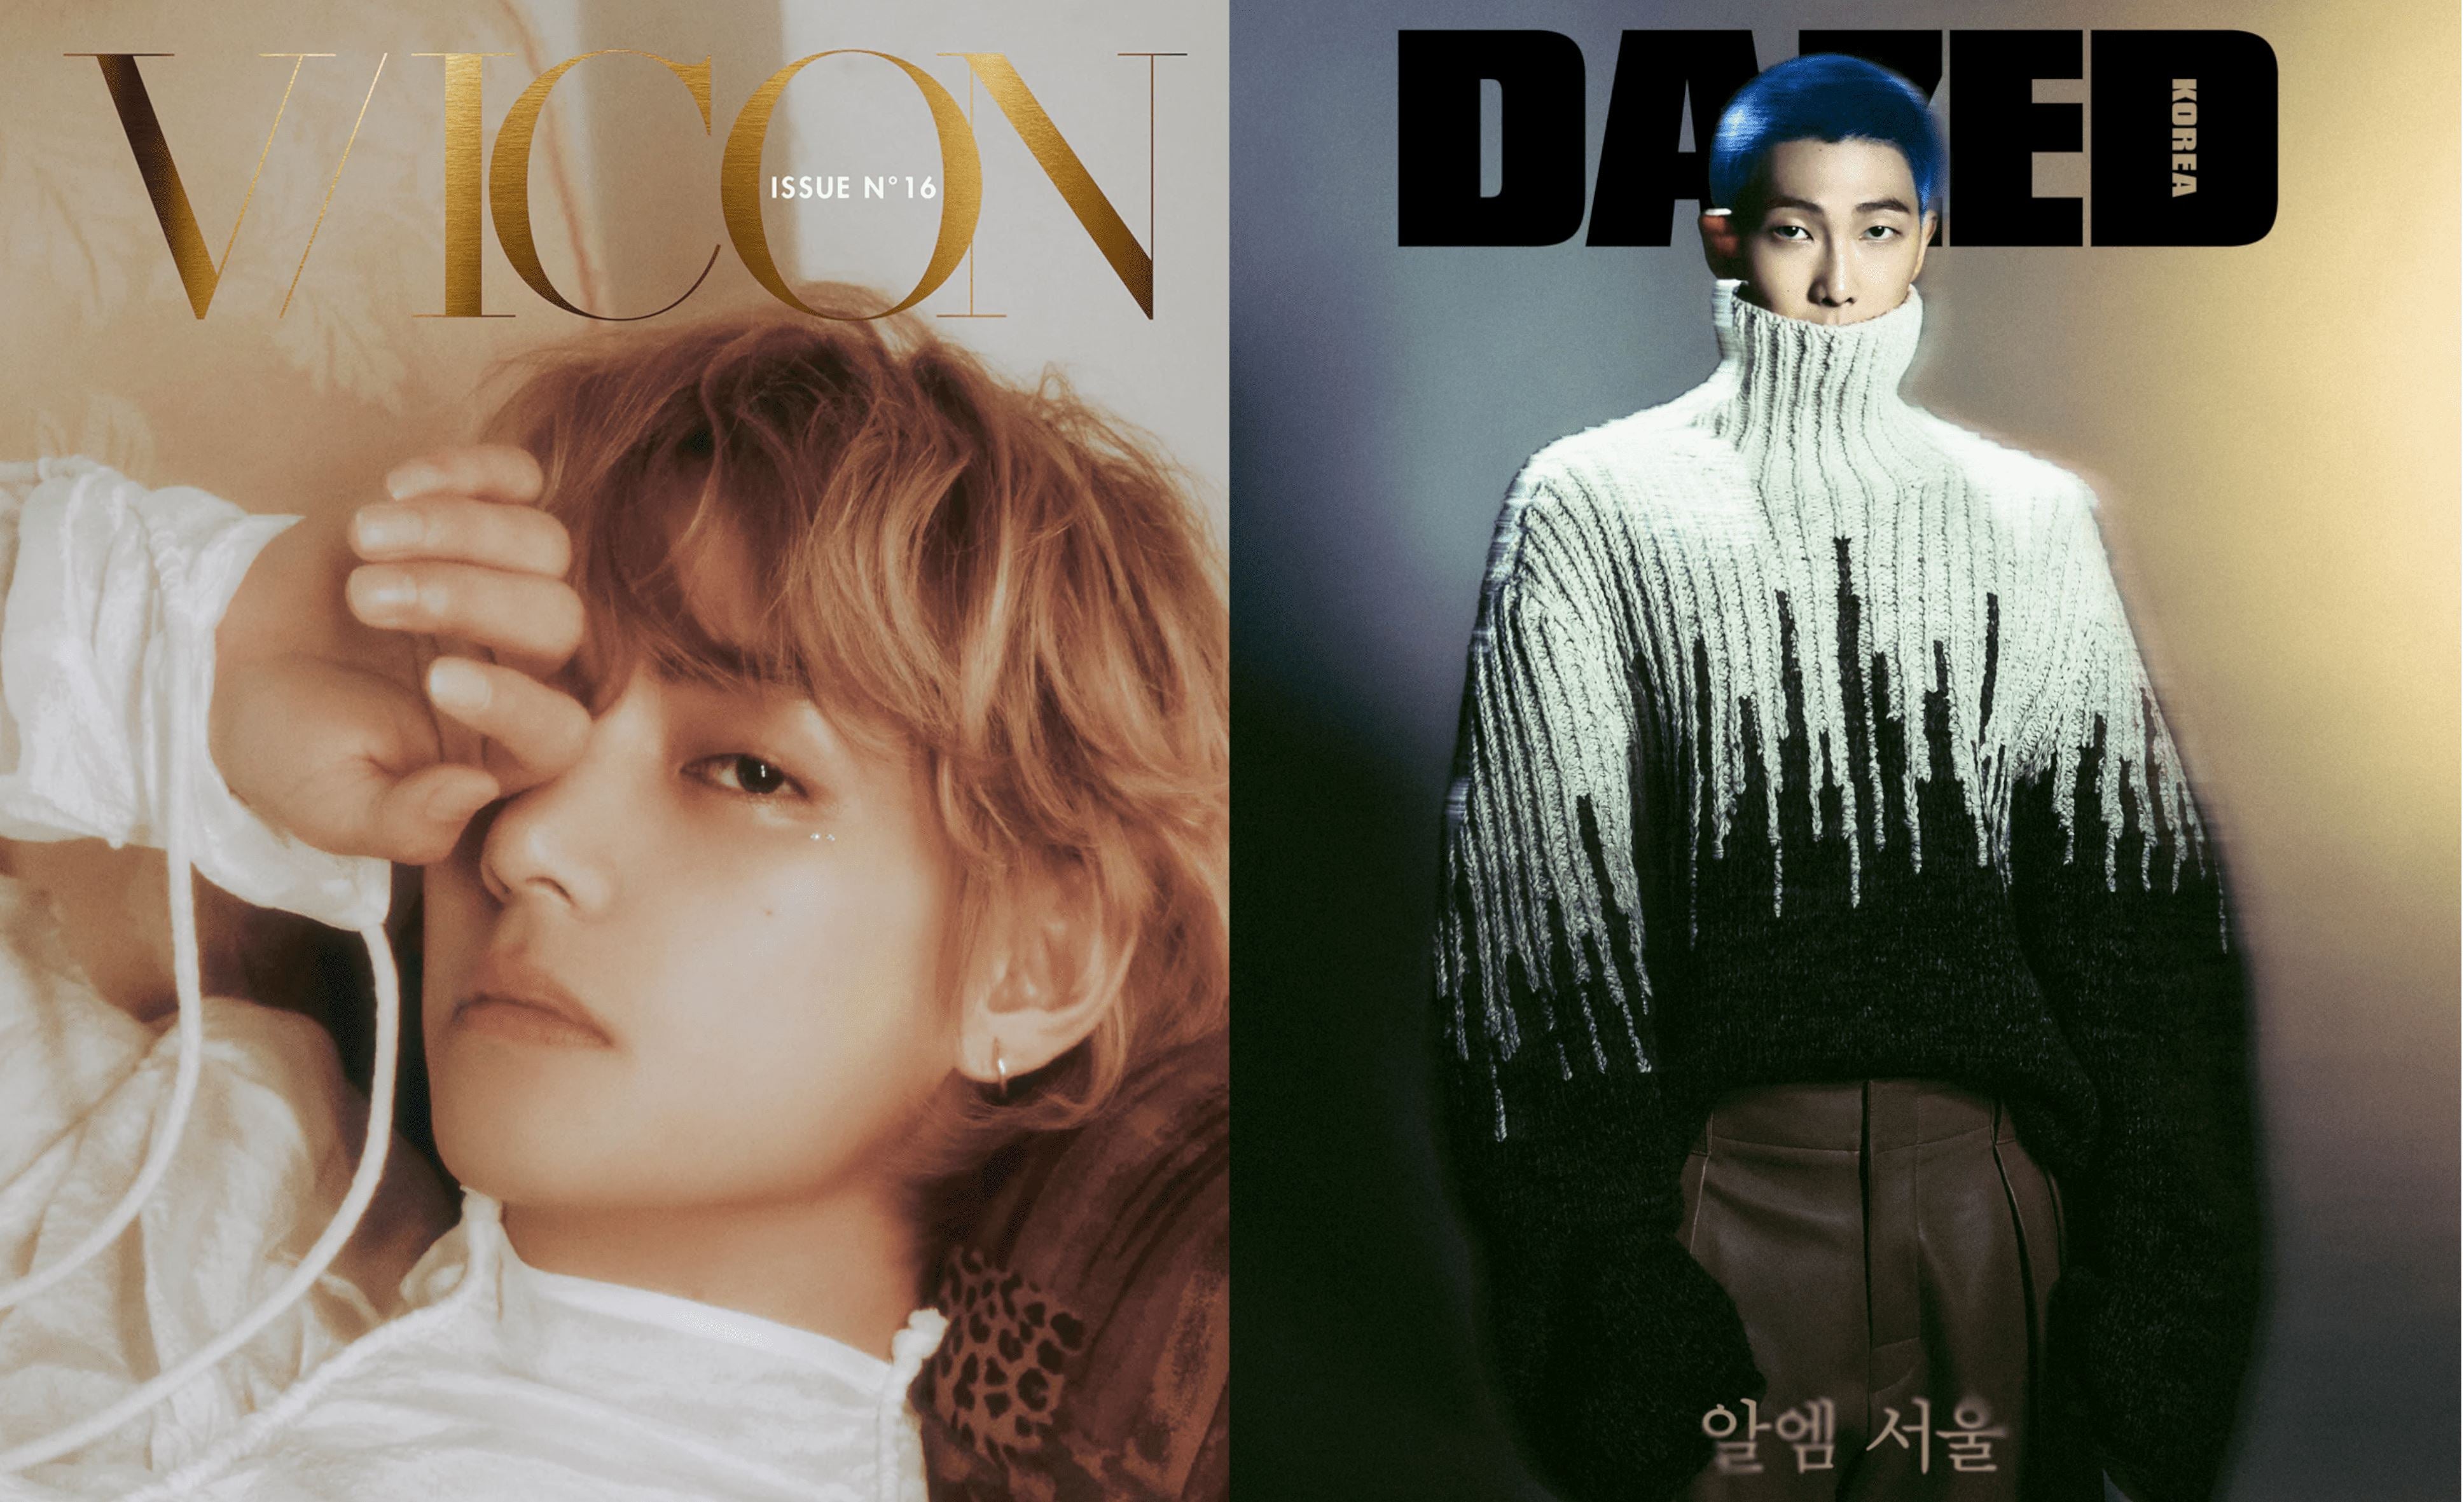 Der Oktober bringt gleich zwei Magazine mit BTS auf dem Cover!